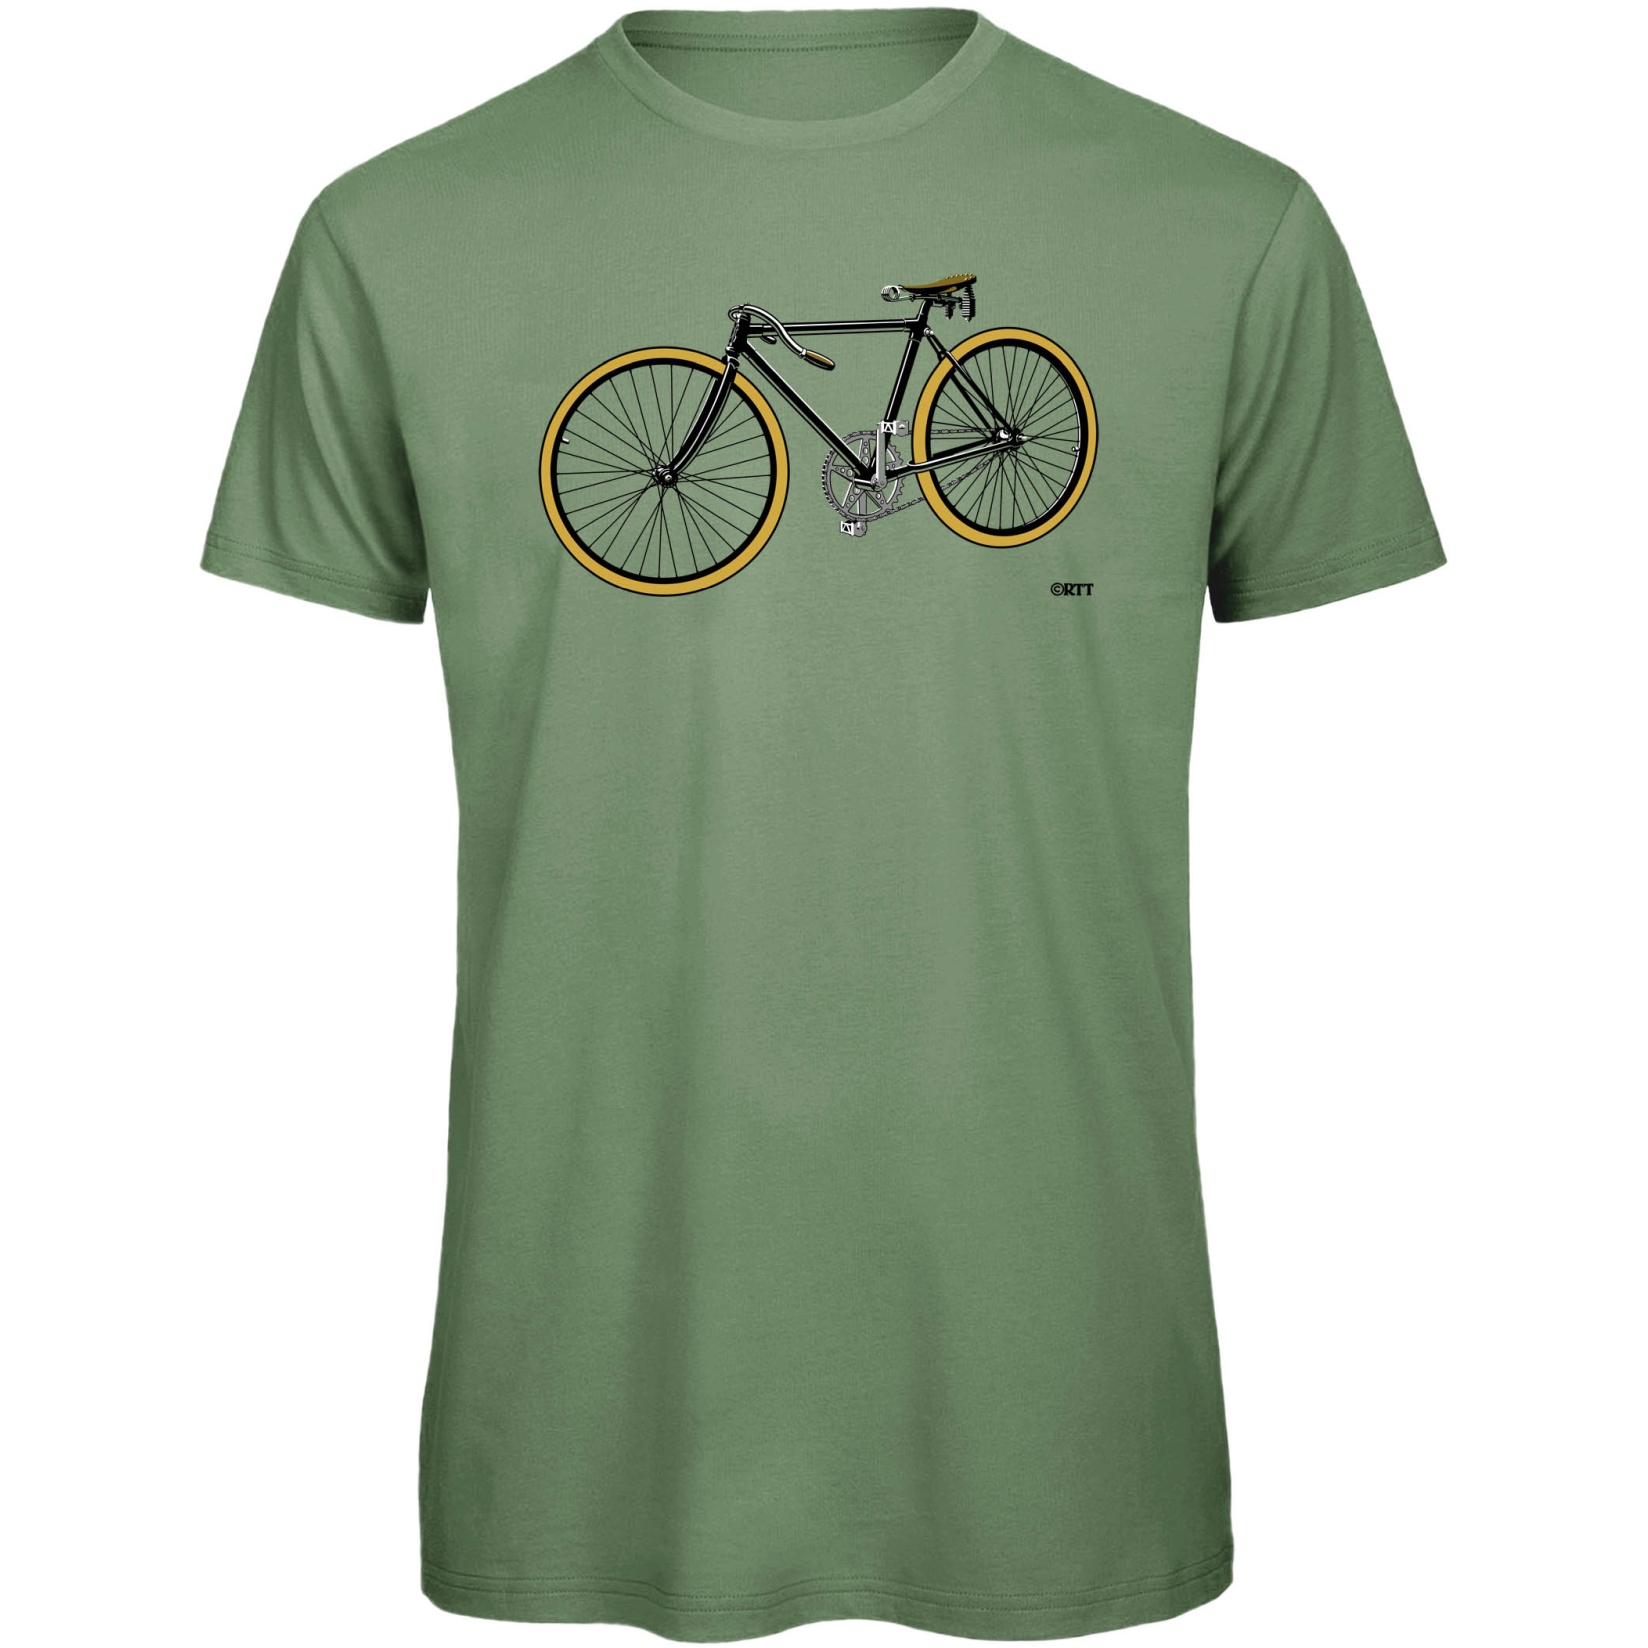 Produktbild von RTTshirts Fahrrad T-Shirt Retro Rennrad - hellgrün